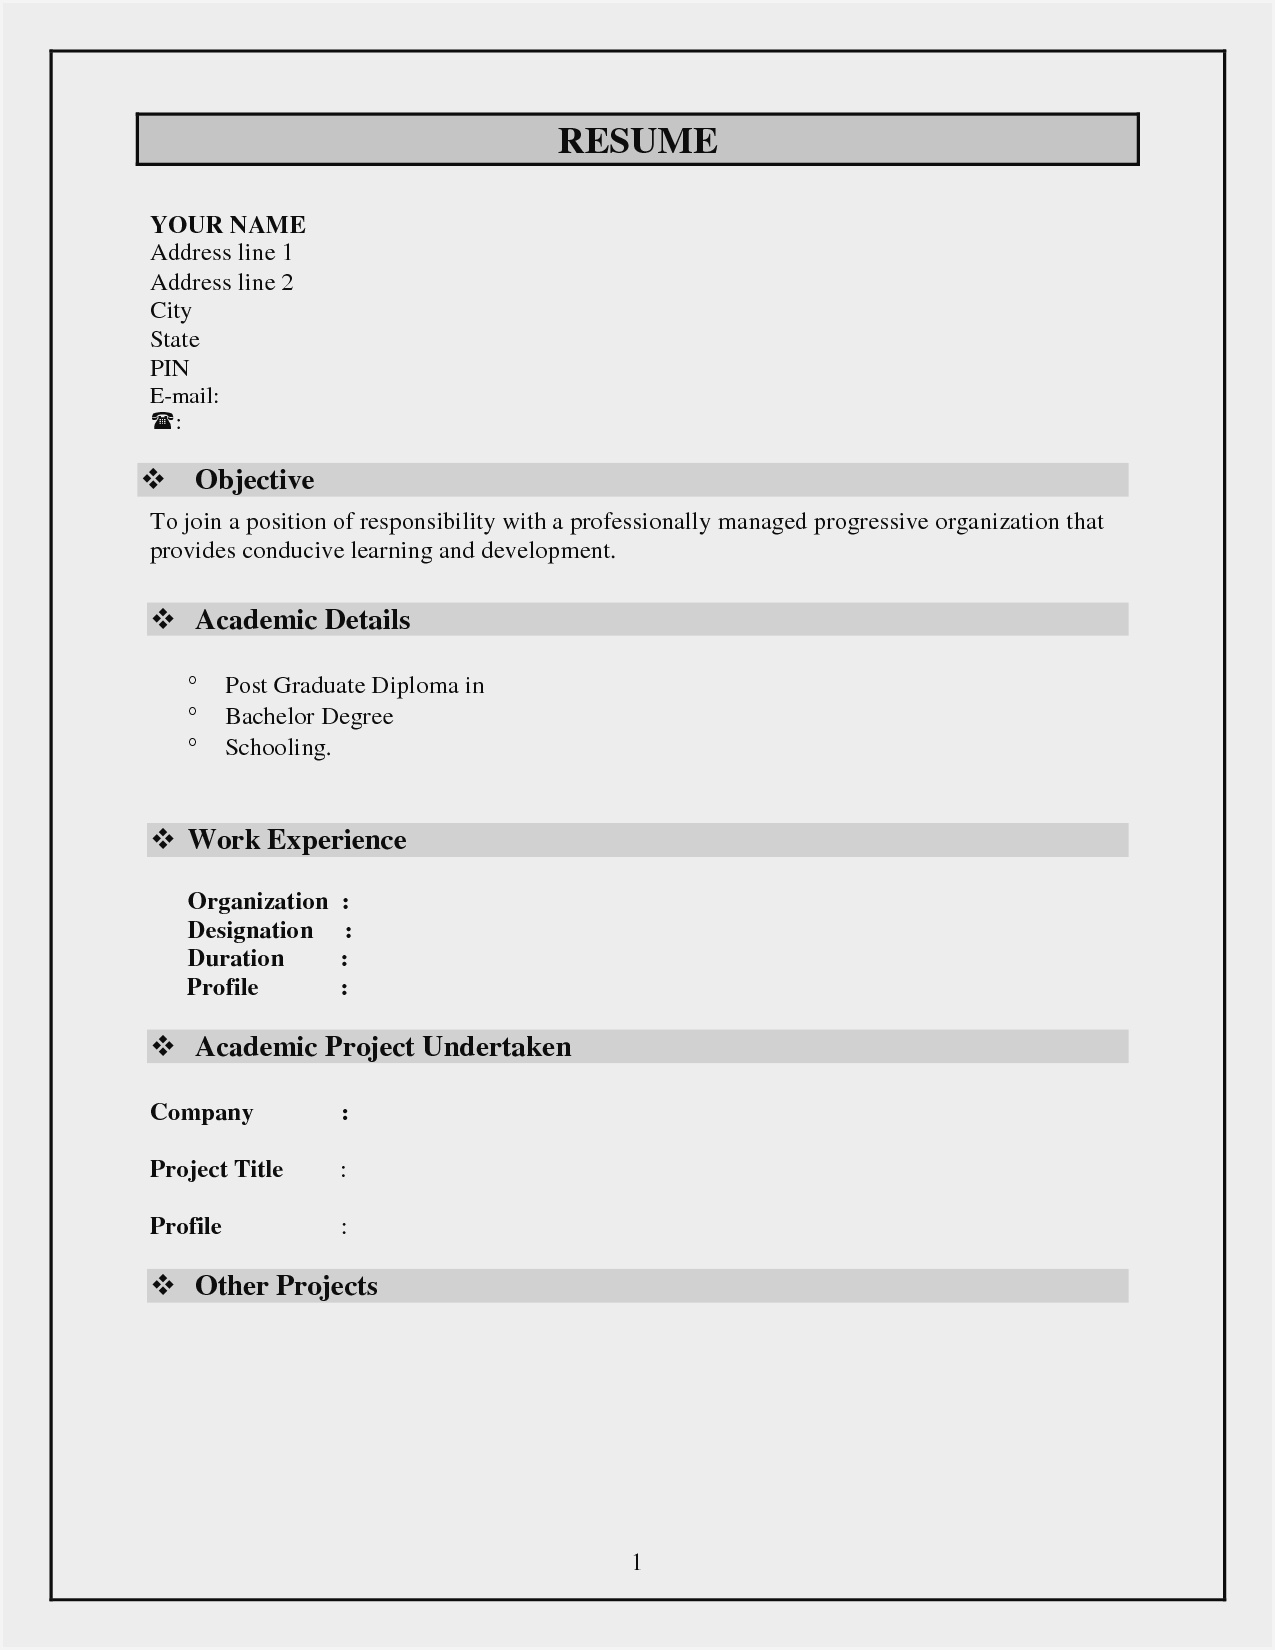 Blank Resume Format Pdf Free Download – Resume : Resume With Free Blank Resume Templates For Microsoft Word